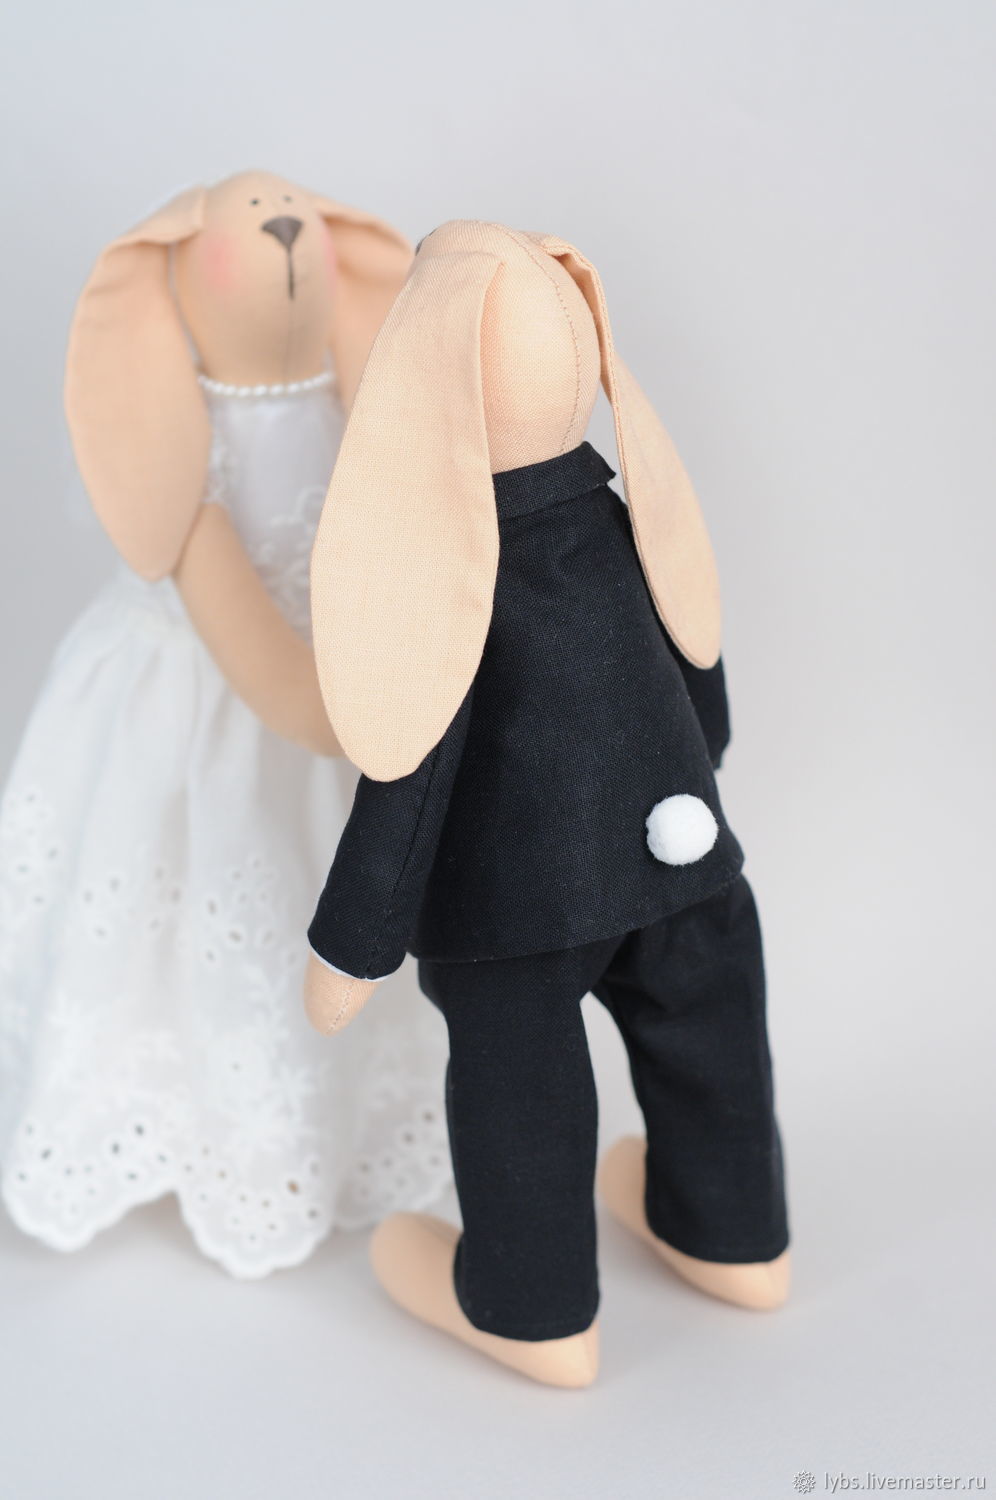 Зайка заяц кукла Тильда подарок декор серый лён платье день рождения дочке